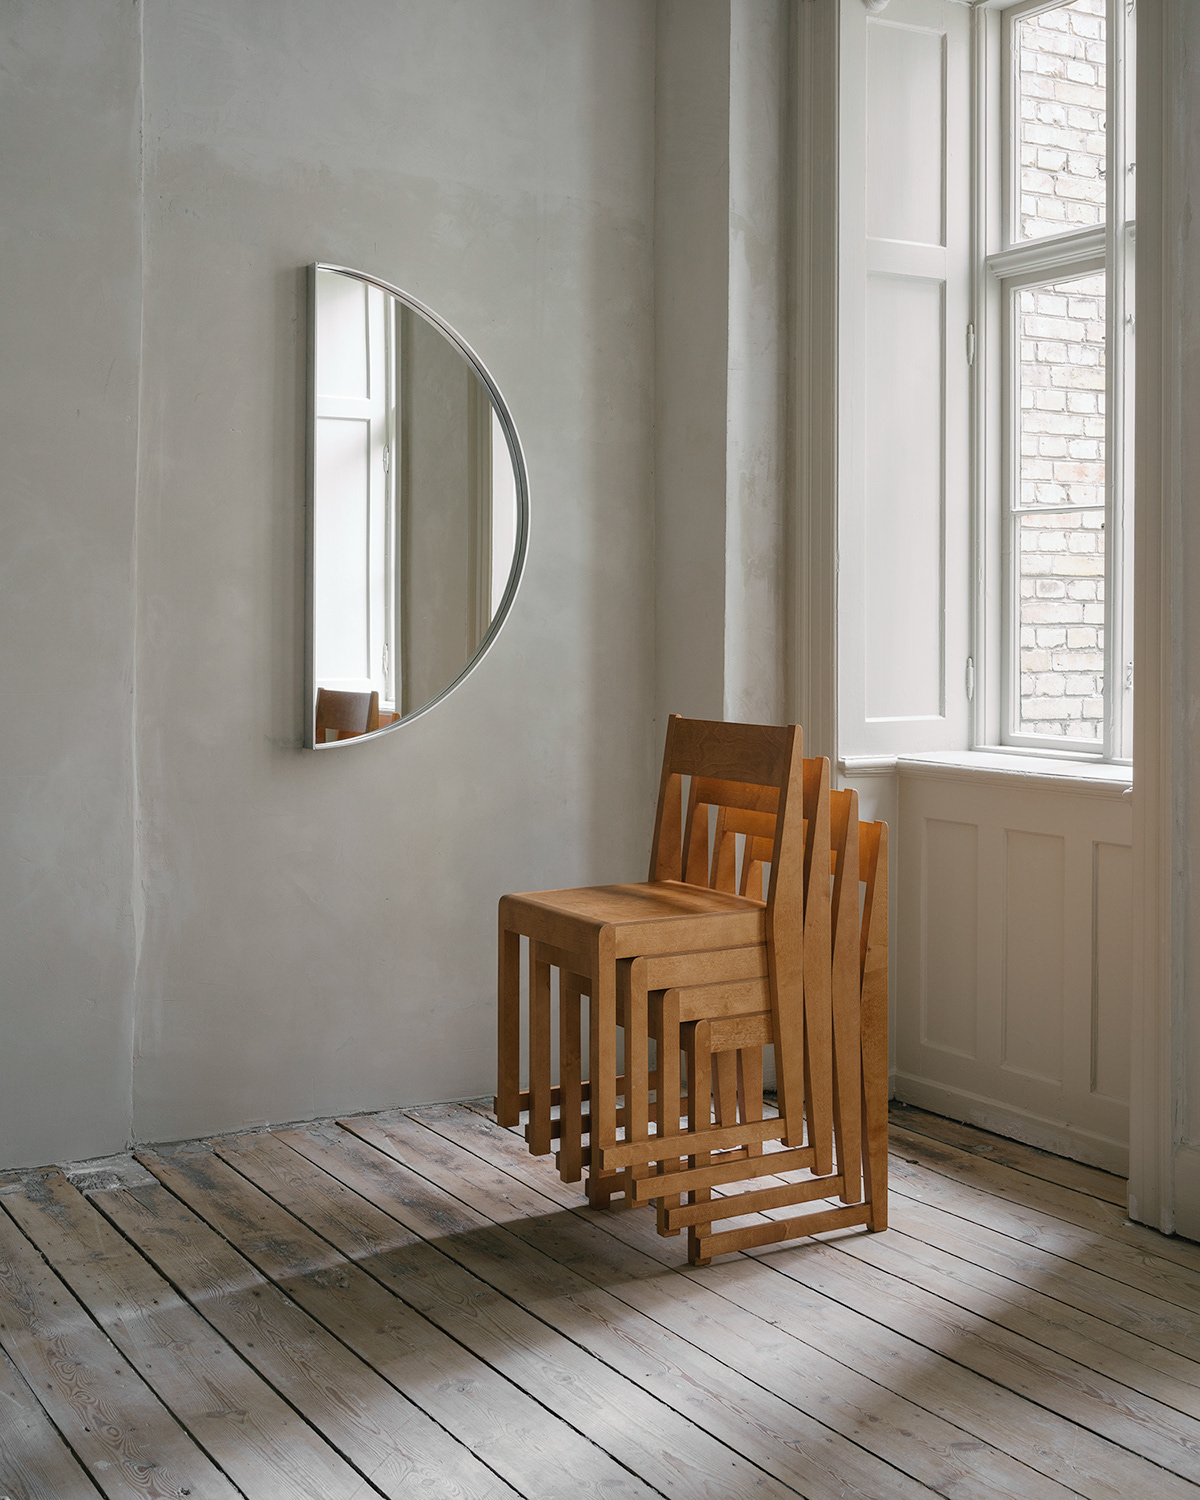 copenhagen design frama framacph furniture Interior minimal Minimalism nordic store